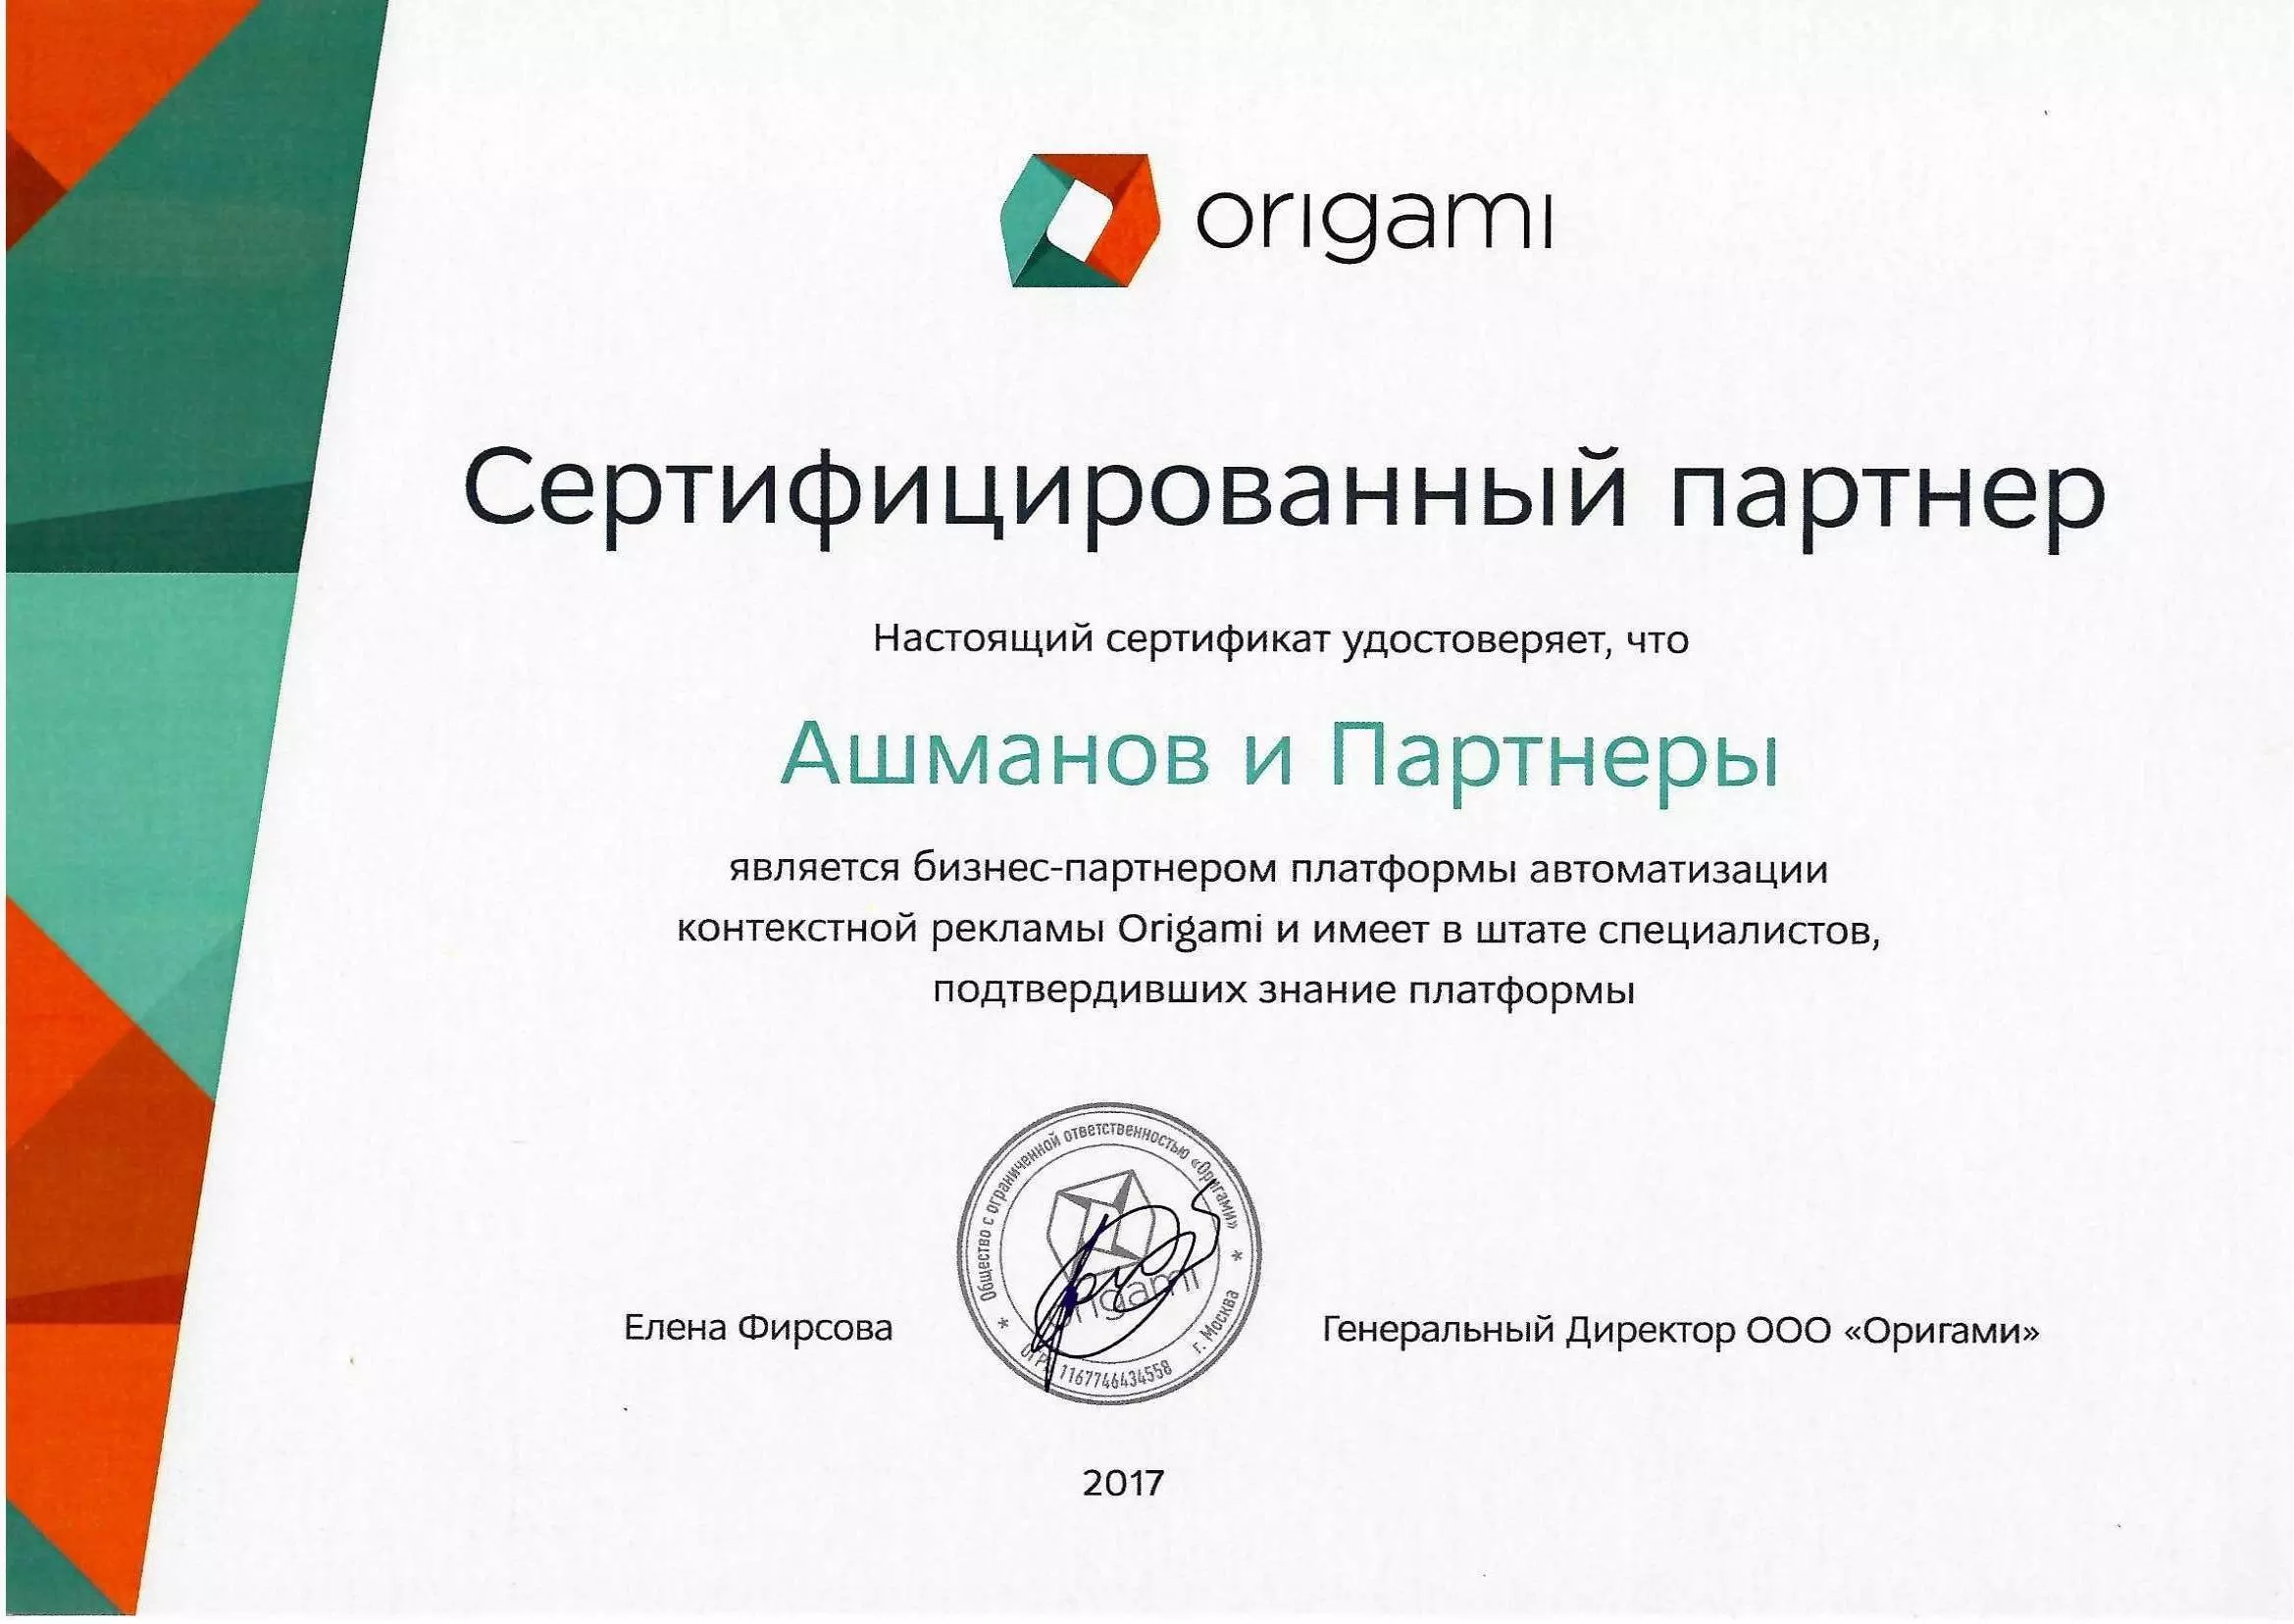 Origami — сервис управления контекстной рекламой. Обзор на Origami, отзывы, цены | slep-kostroma.ru